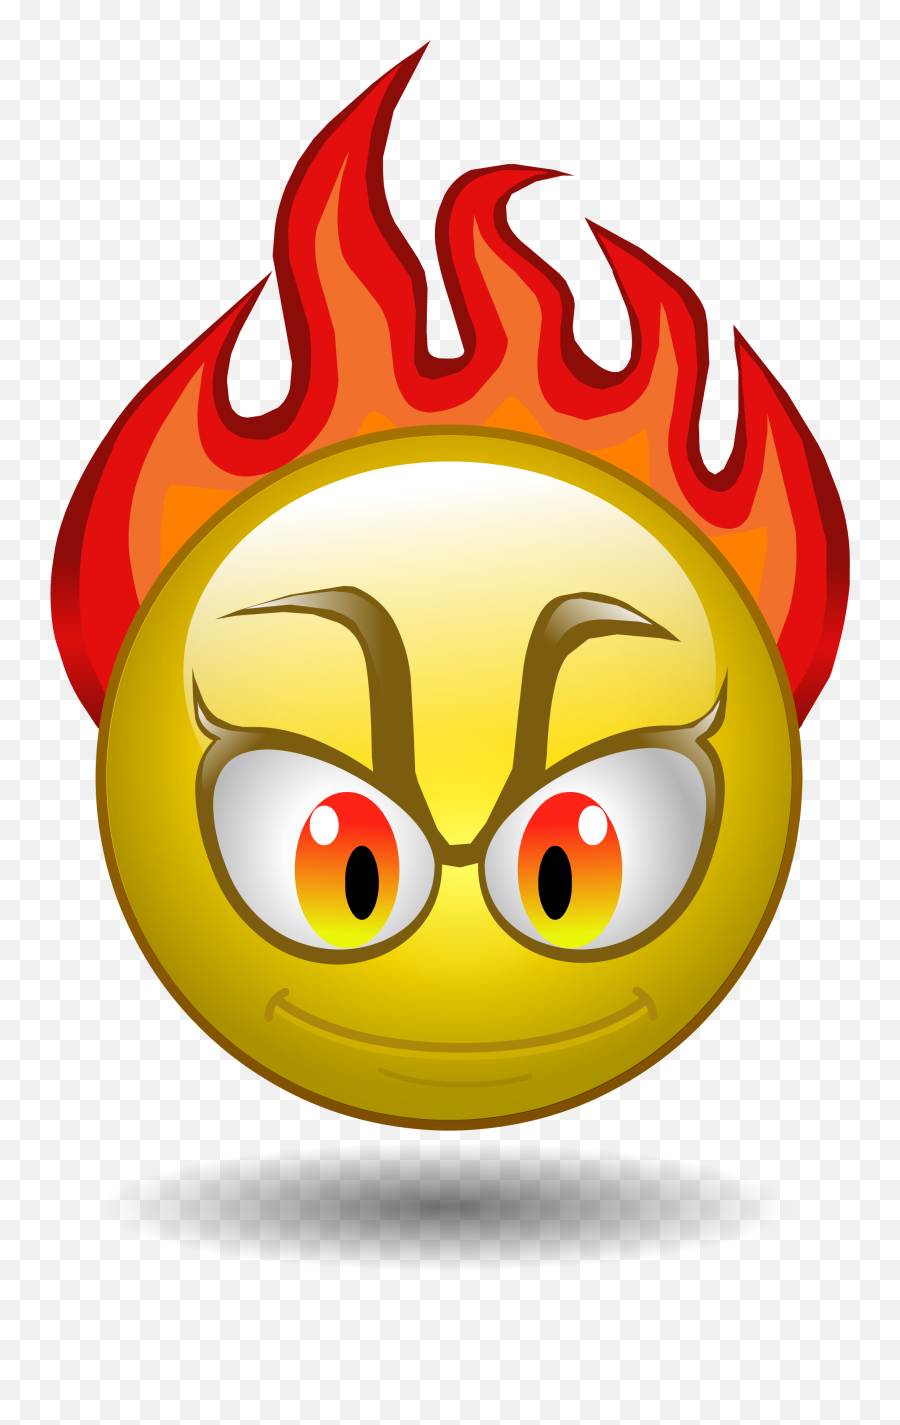 Angry Crying Emoji Png Download Image - Angry Emoji Png,Angry Cry Emoji